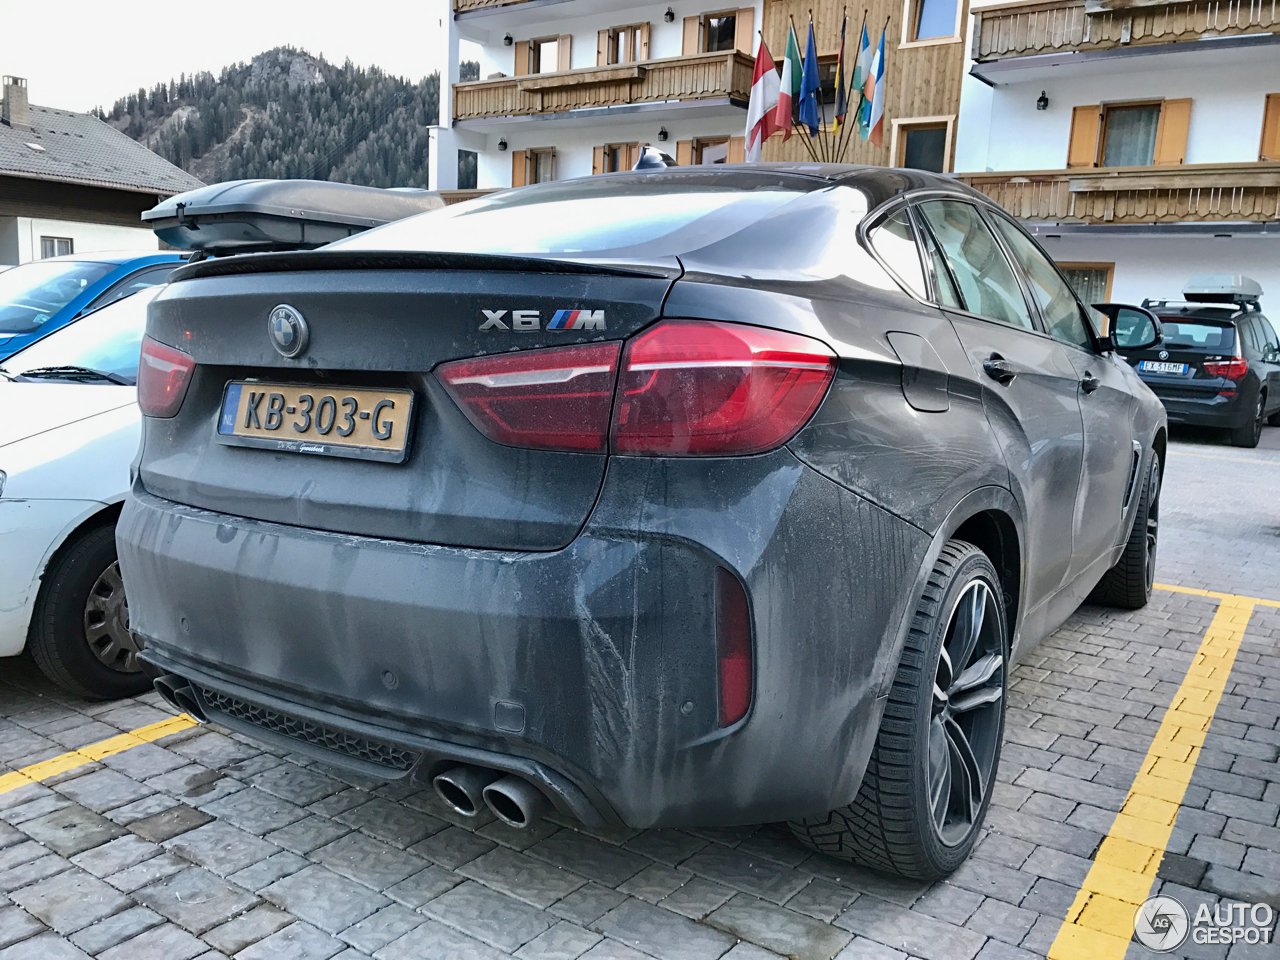 BMW X6 M F86 - 1 January 2017 - Autogespot